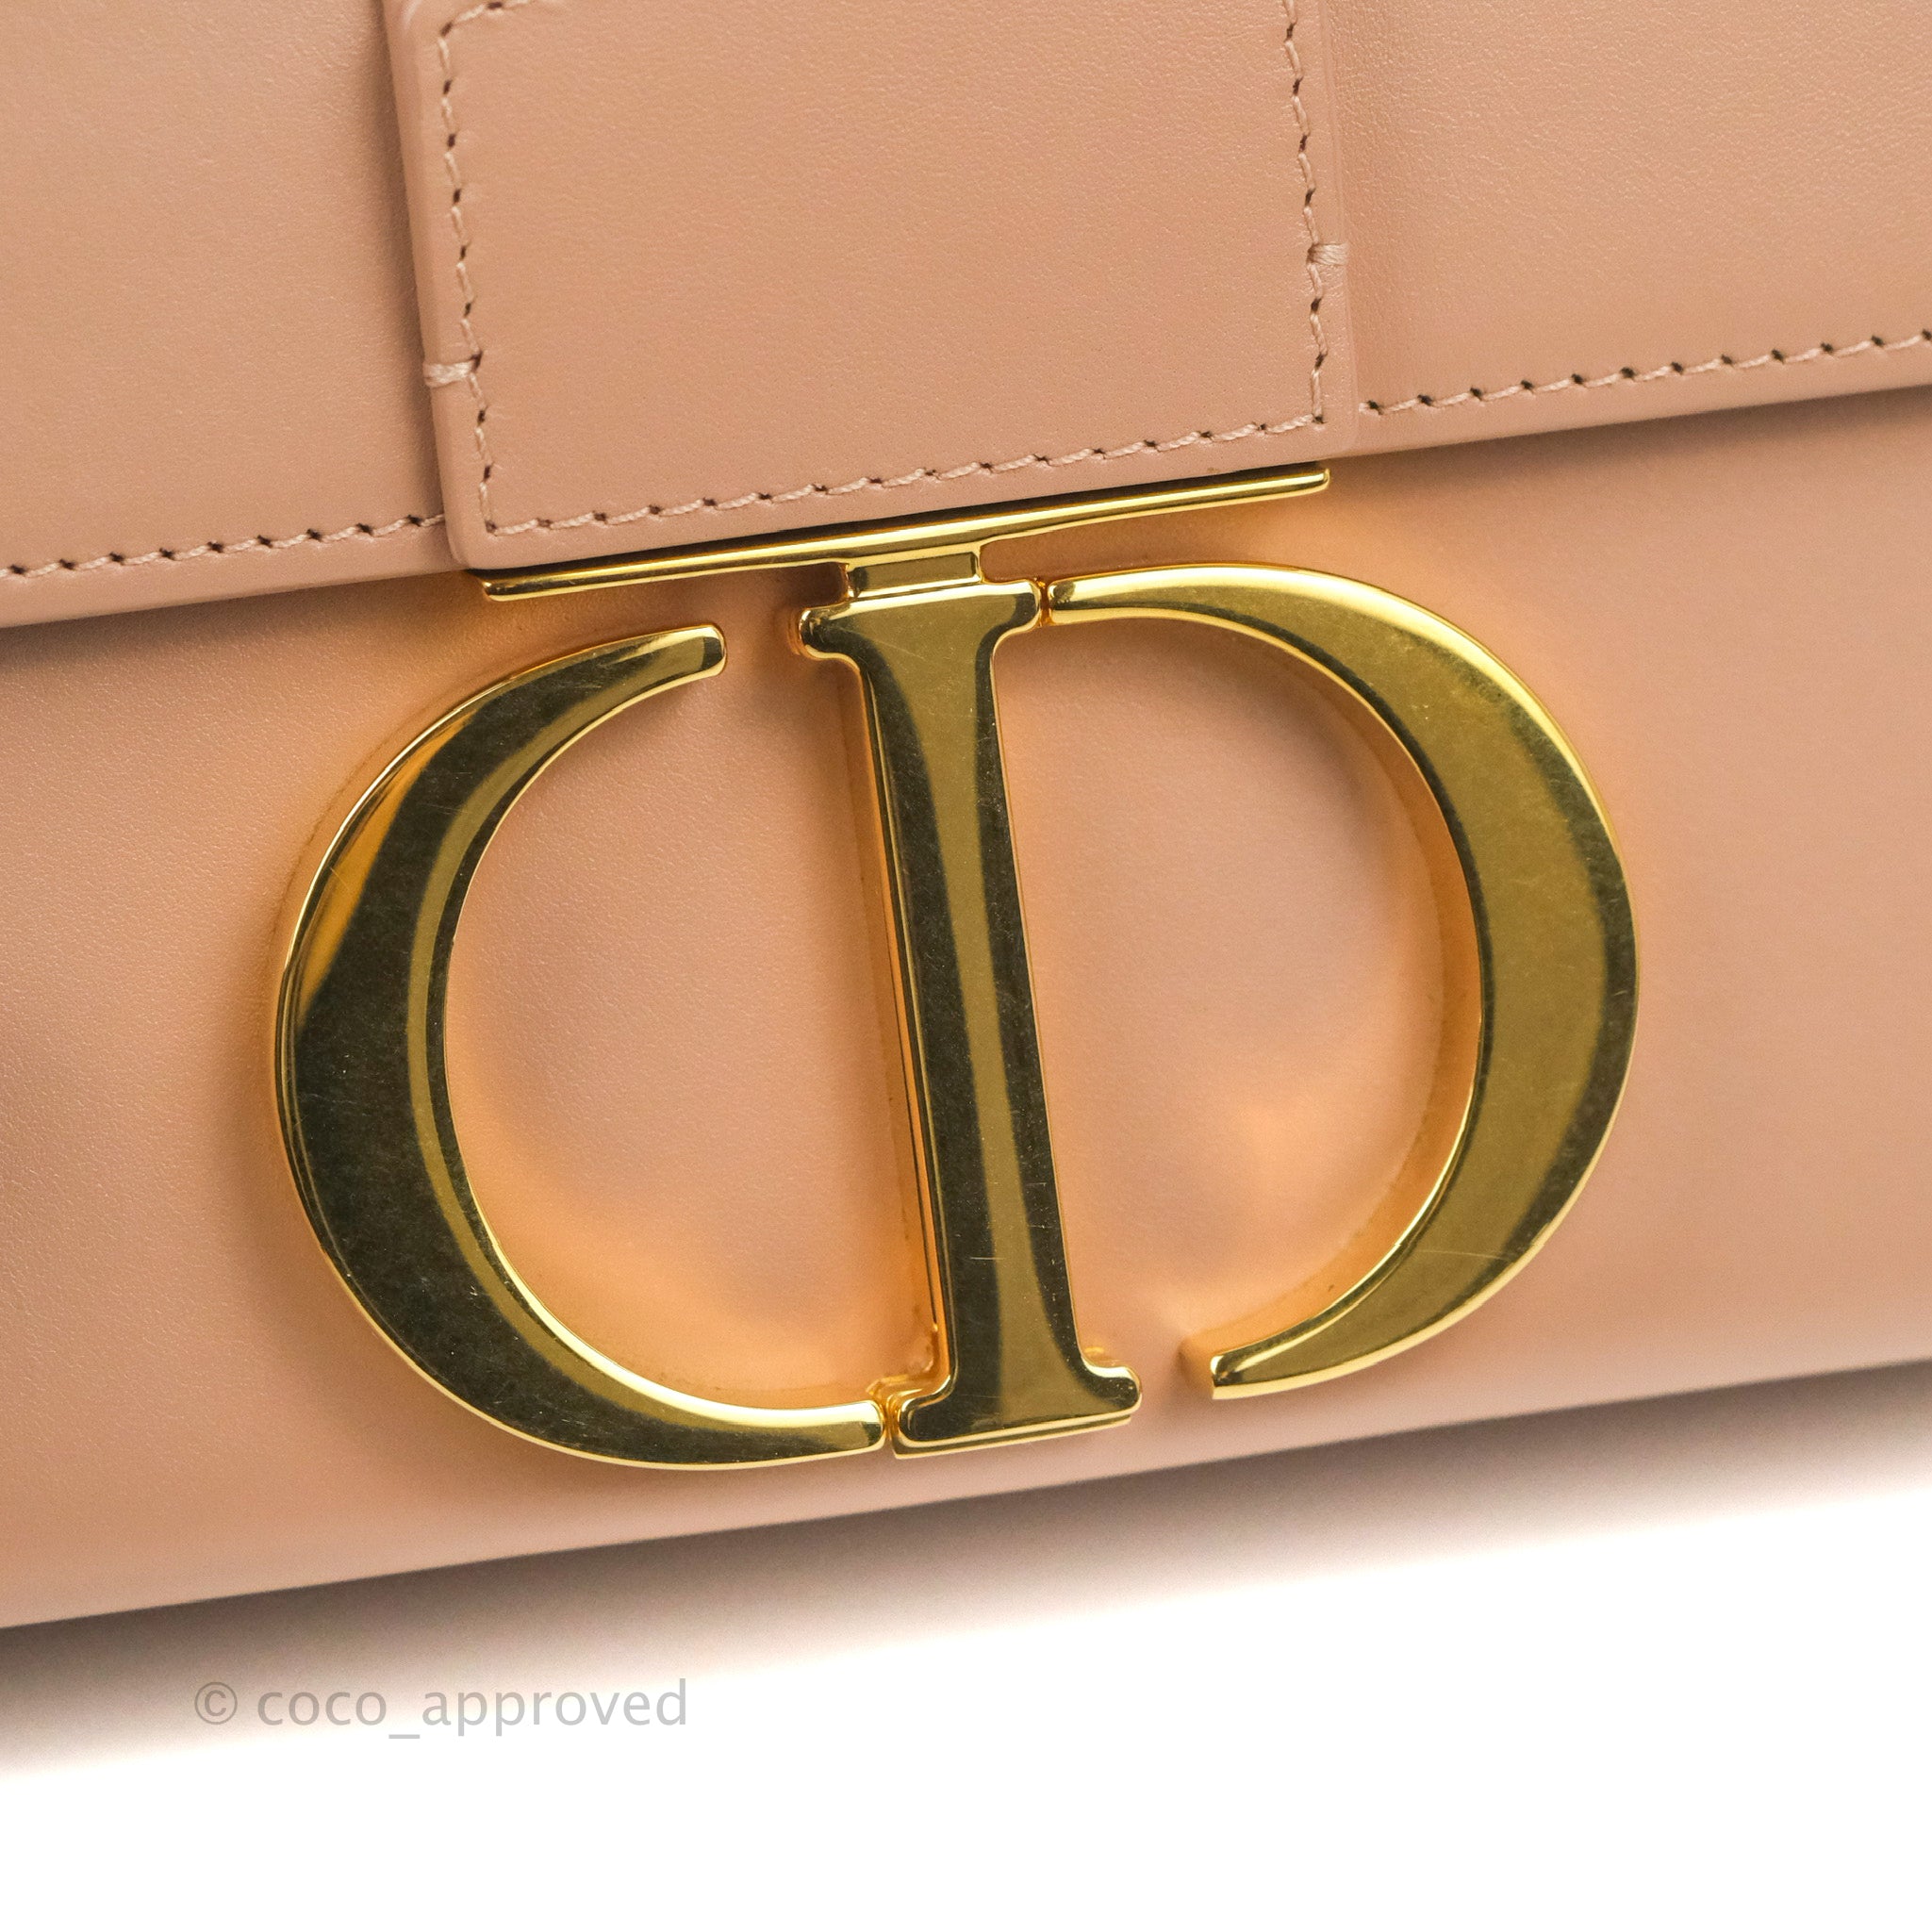 Dior 30 Montaigne Box